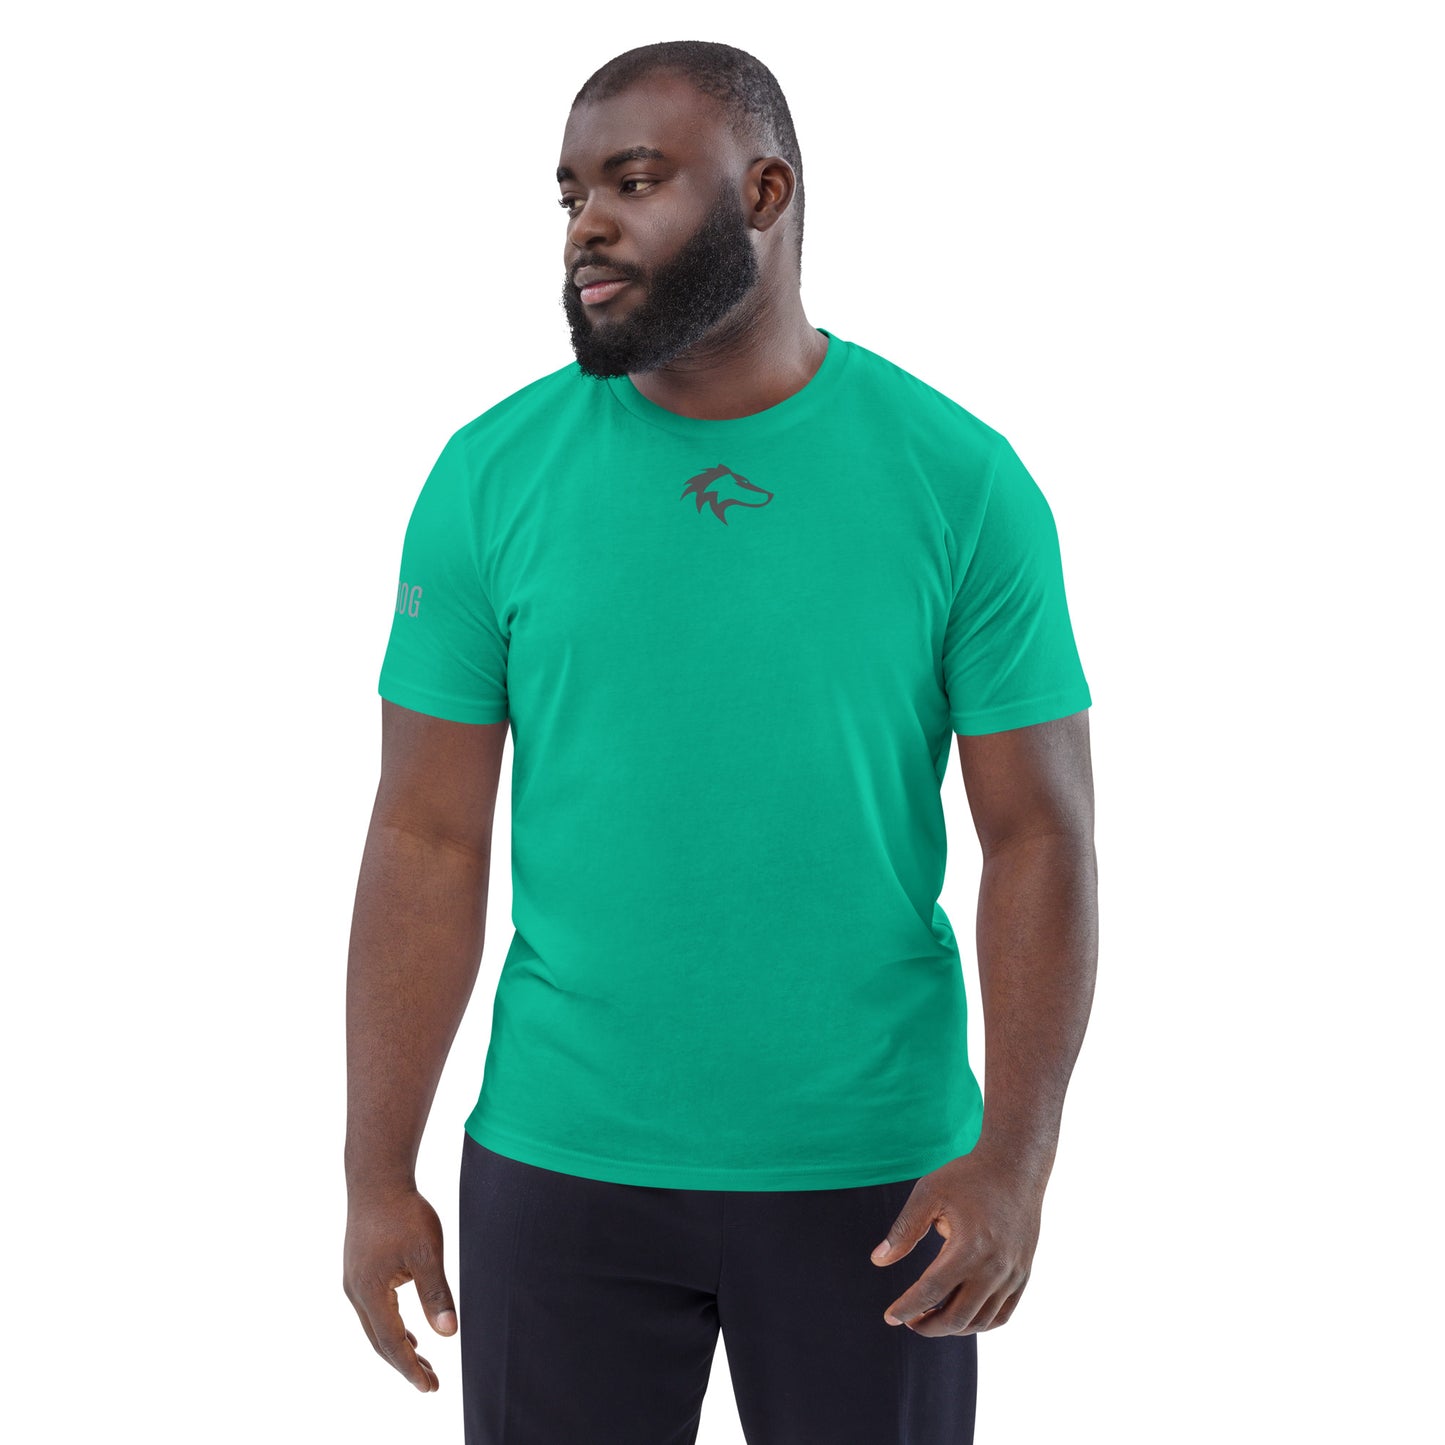 Unisex organic WARDOG cotton t-shirt